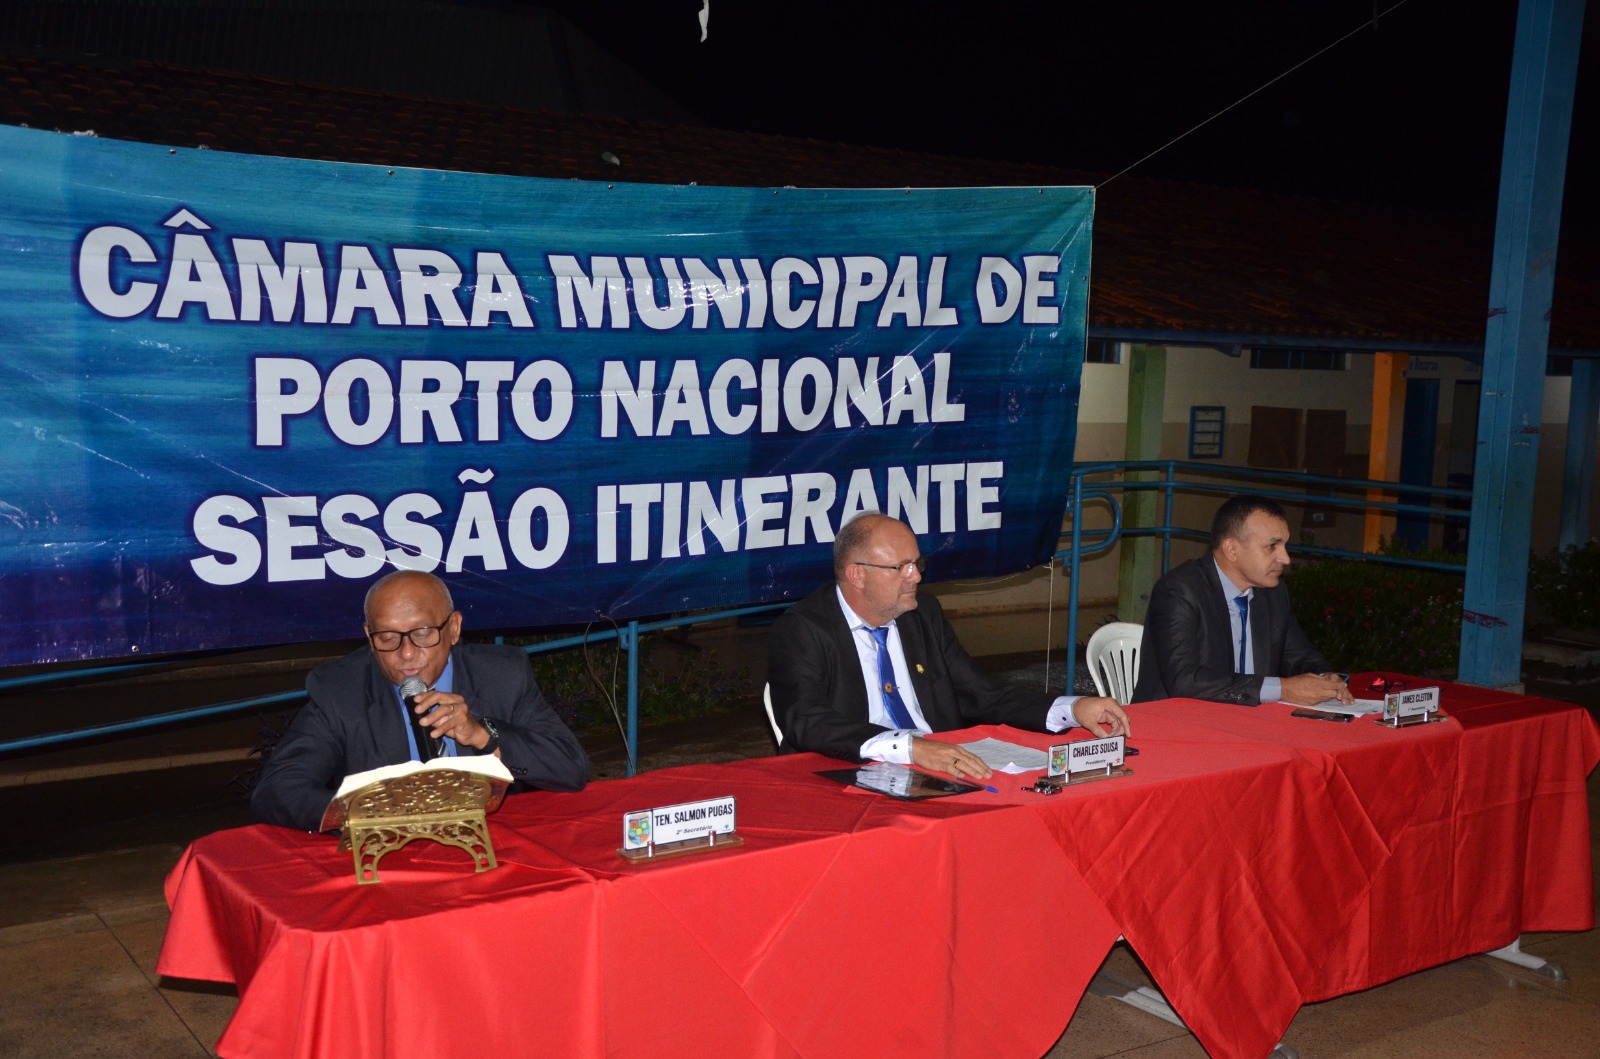  Porto Nacional: Câmara Municipal realiza 2ª sessão itinerante no Setor Brigadeiro Eduardo Gomes